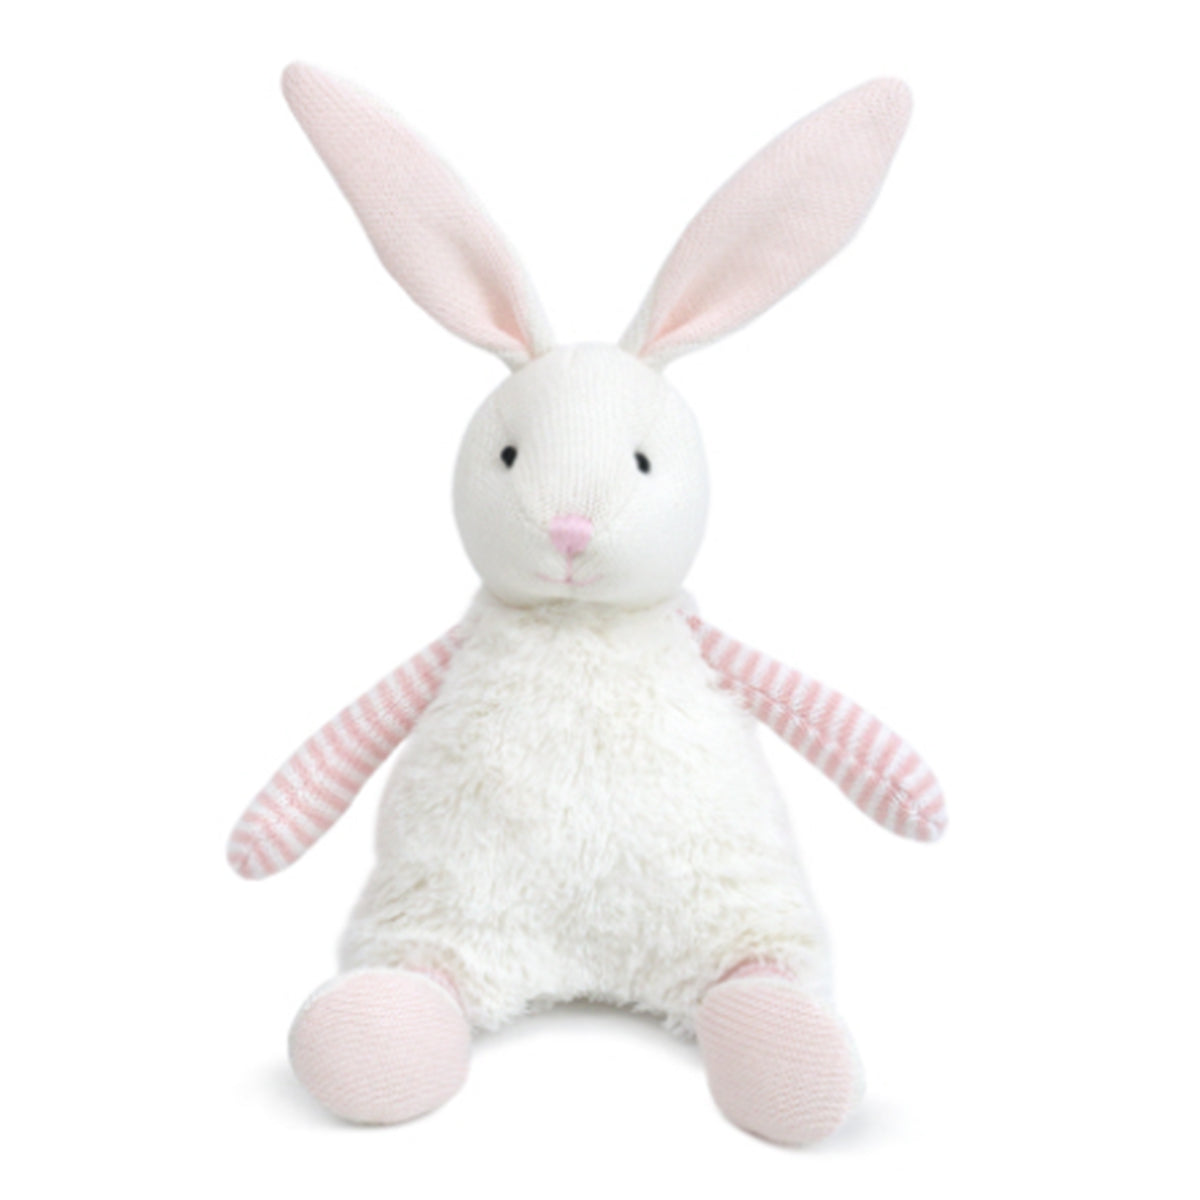 Mon Ami Pink Floppy Bunny